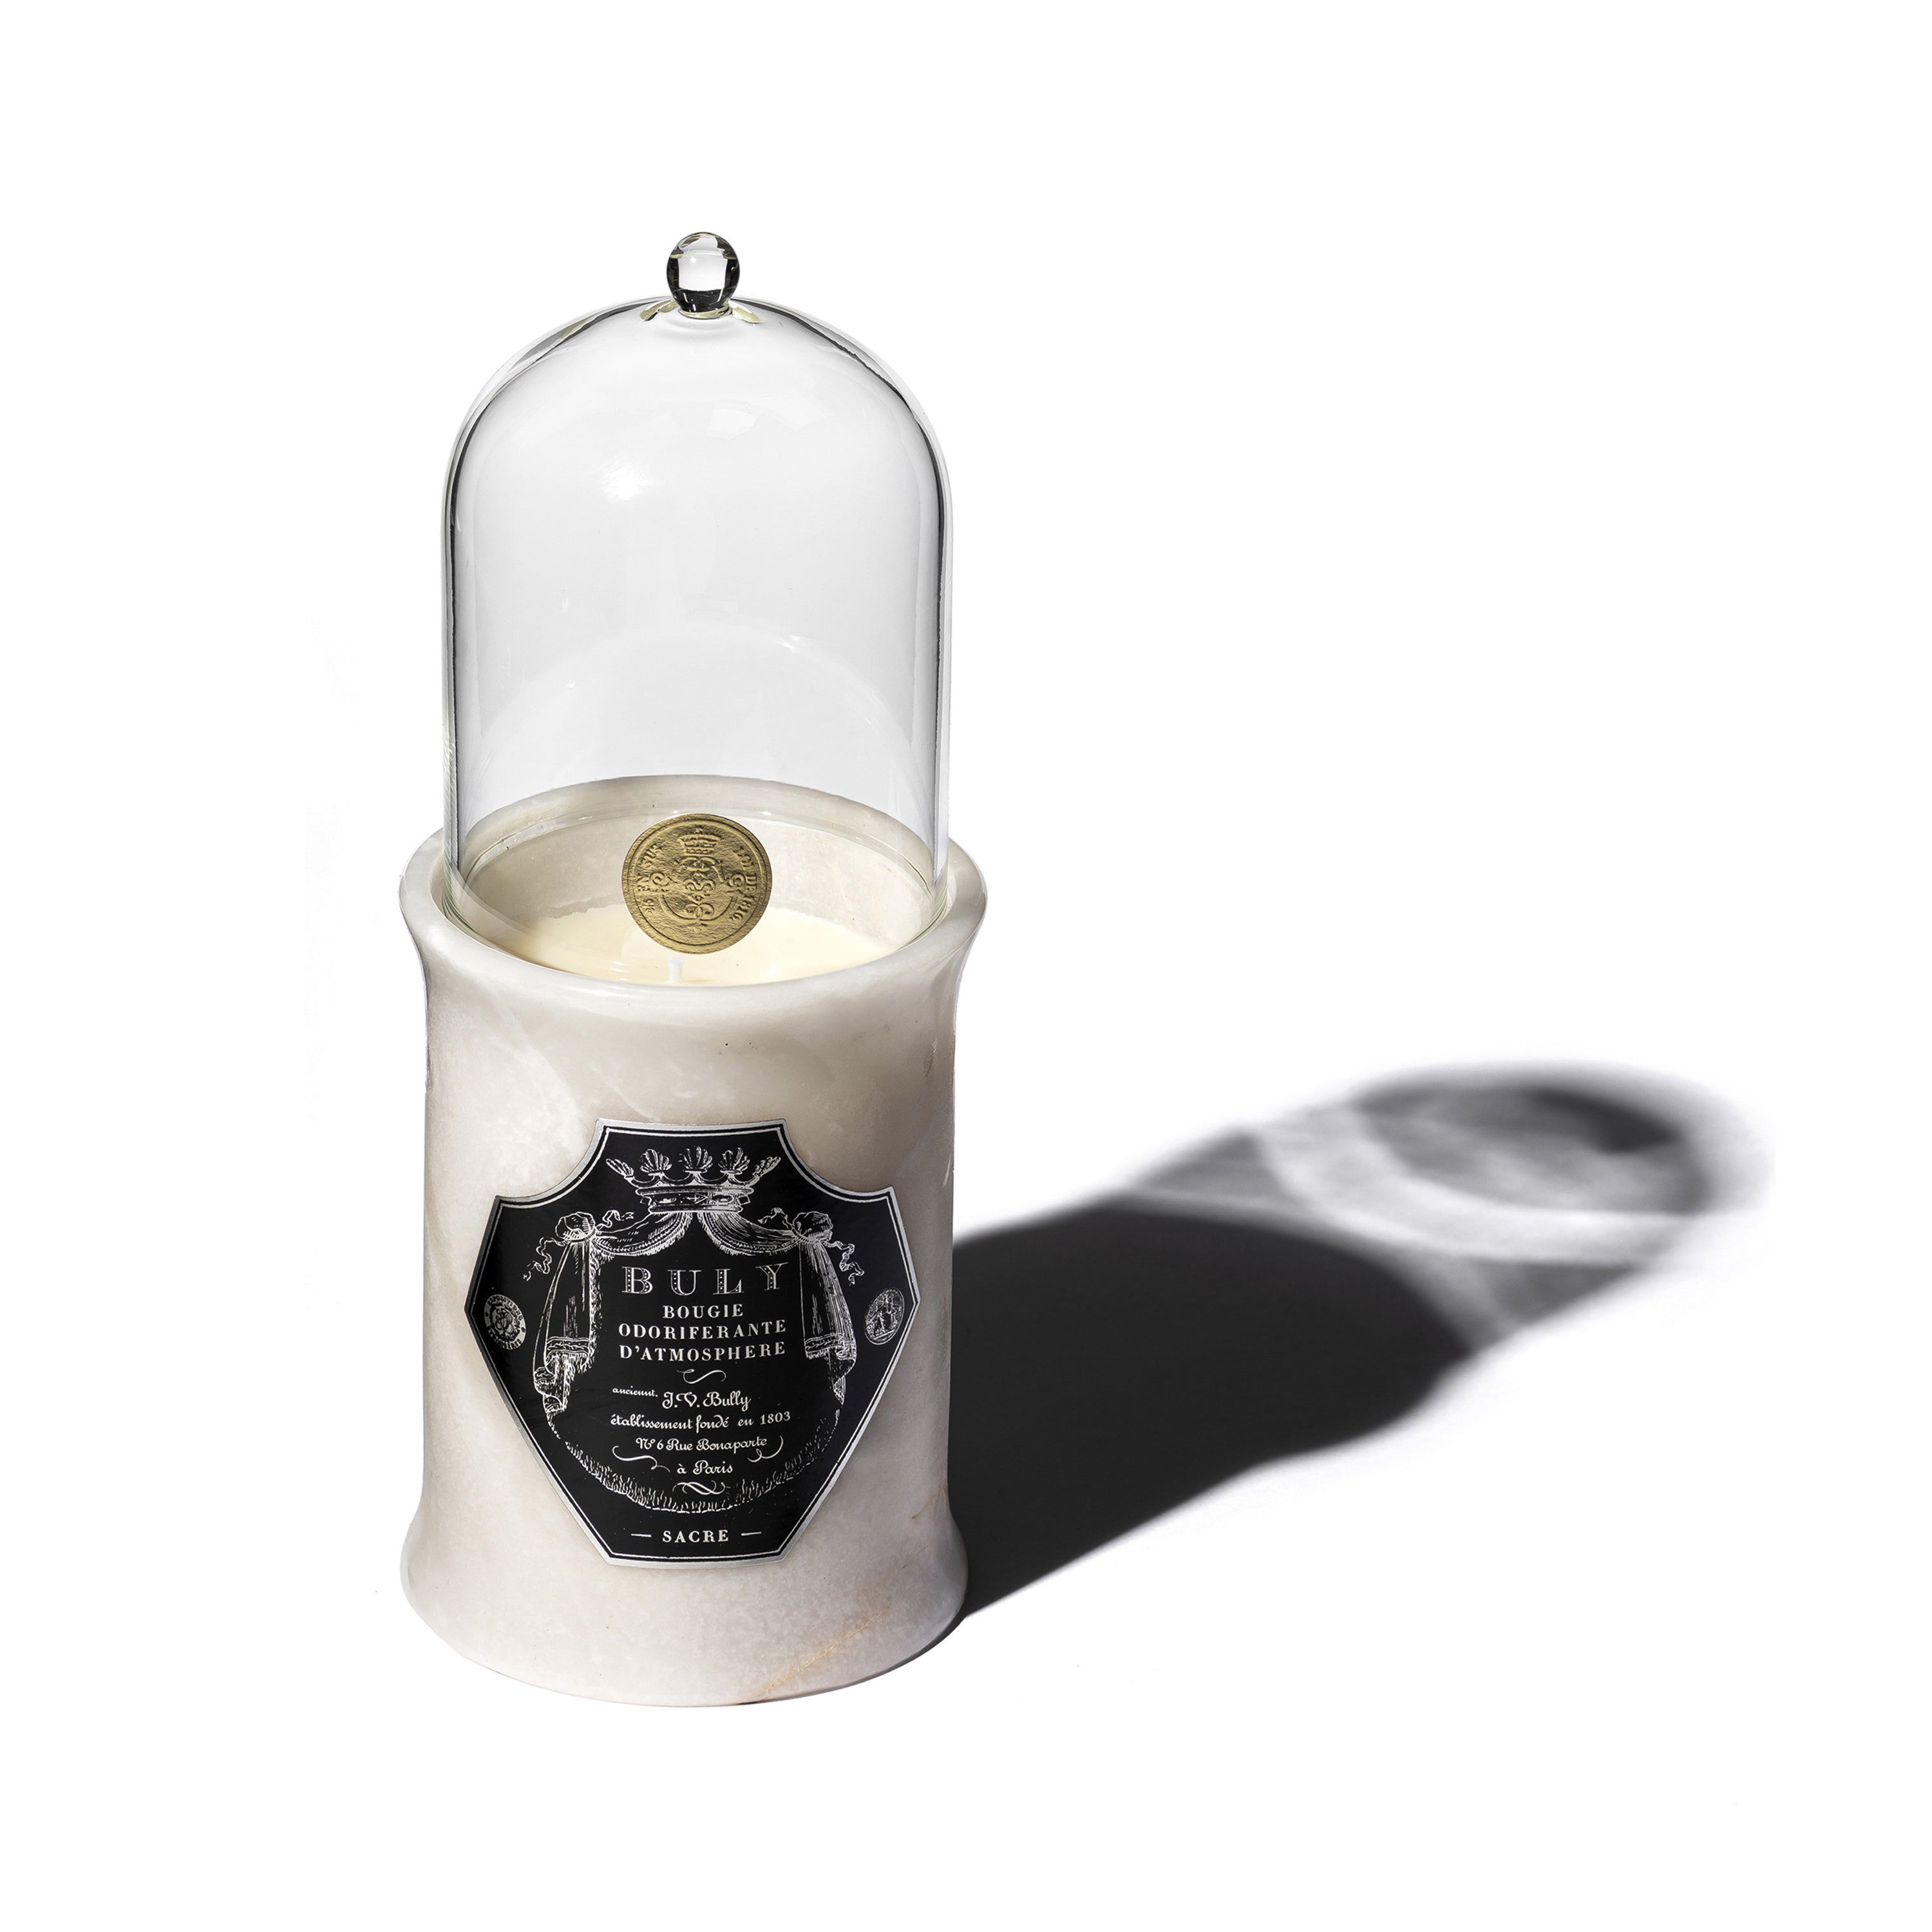 Les bougies parfumées Buly 1803 